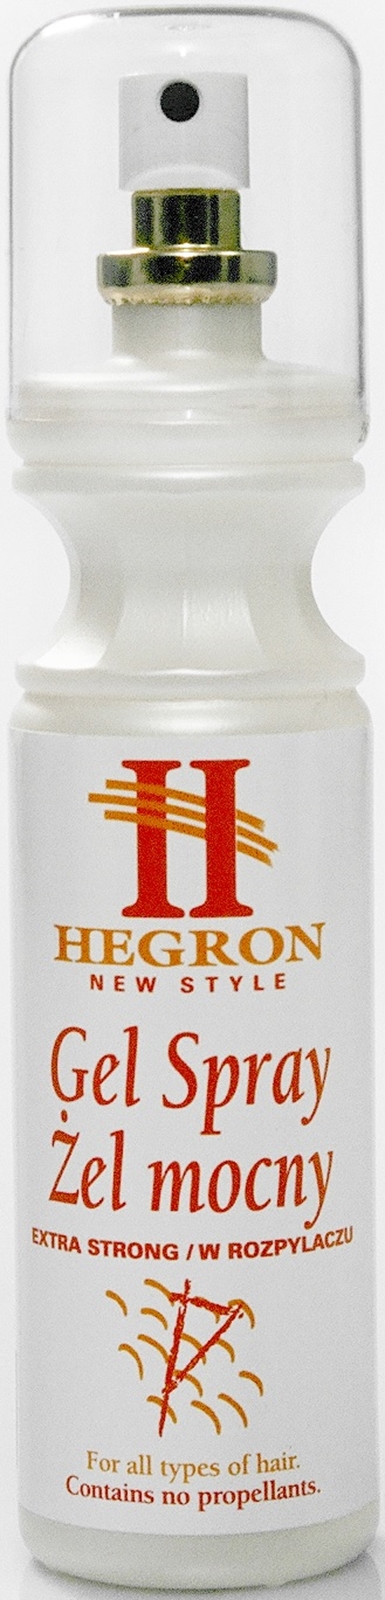 Hegron Gel Spray, żel do włosów mocny, spray 150ml